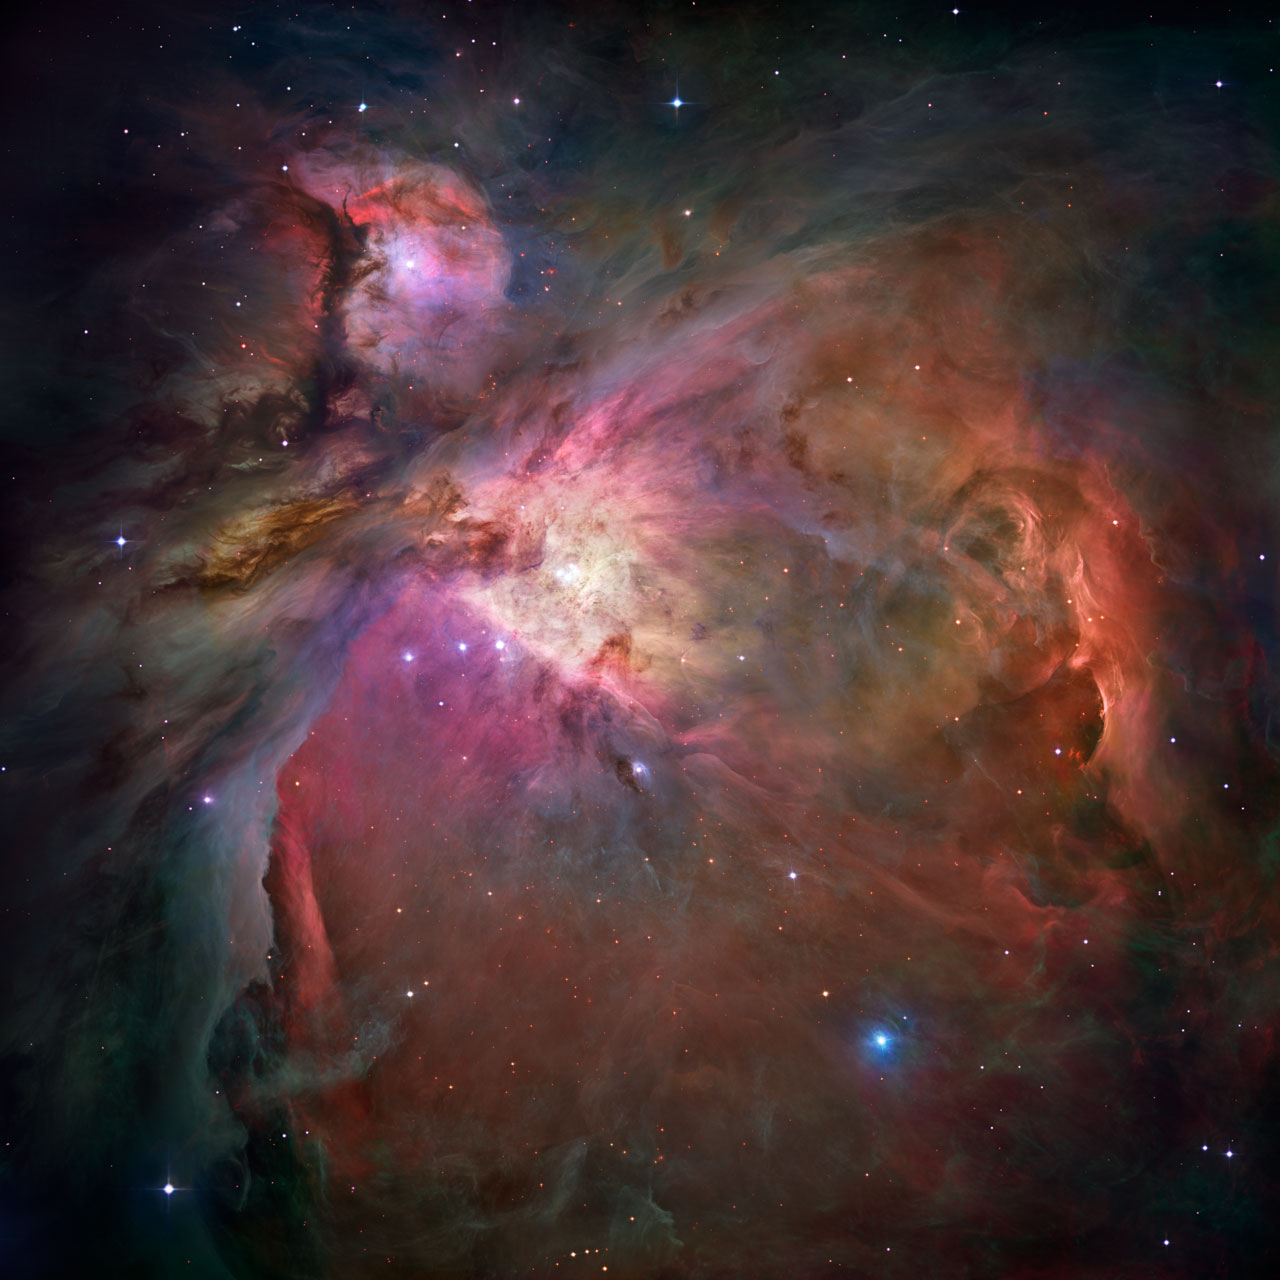 Tumannost' Oriona. Vid v teleskop Habbla